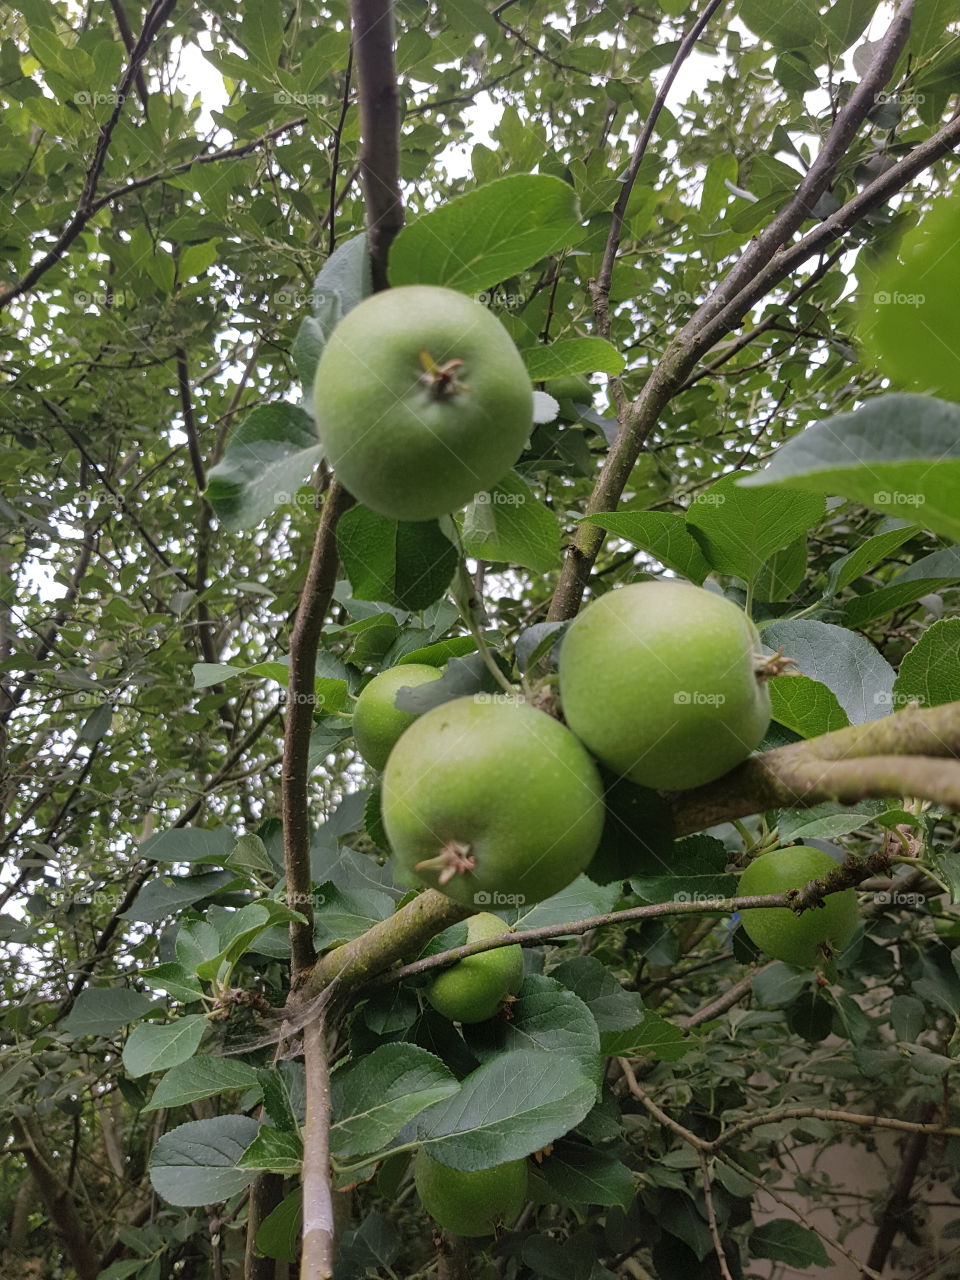 my apple tree